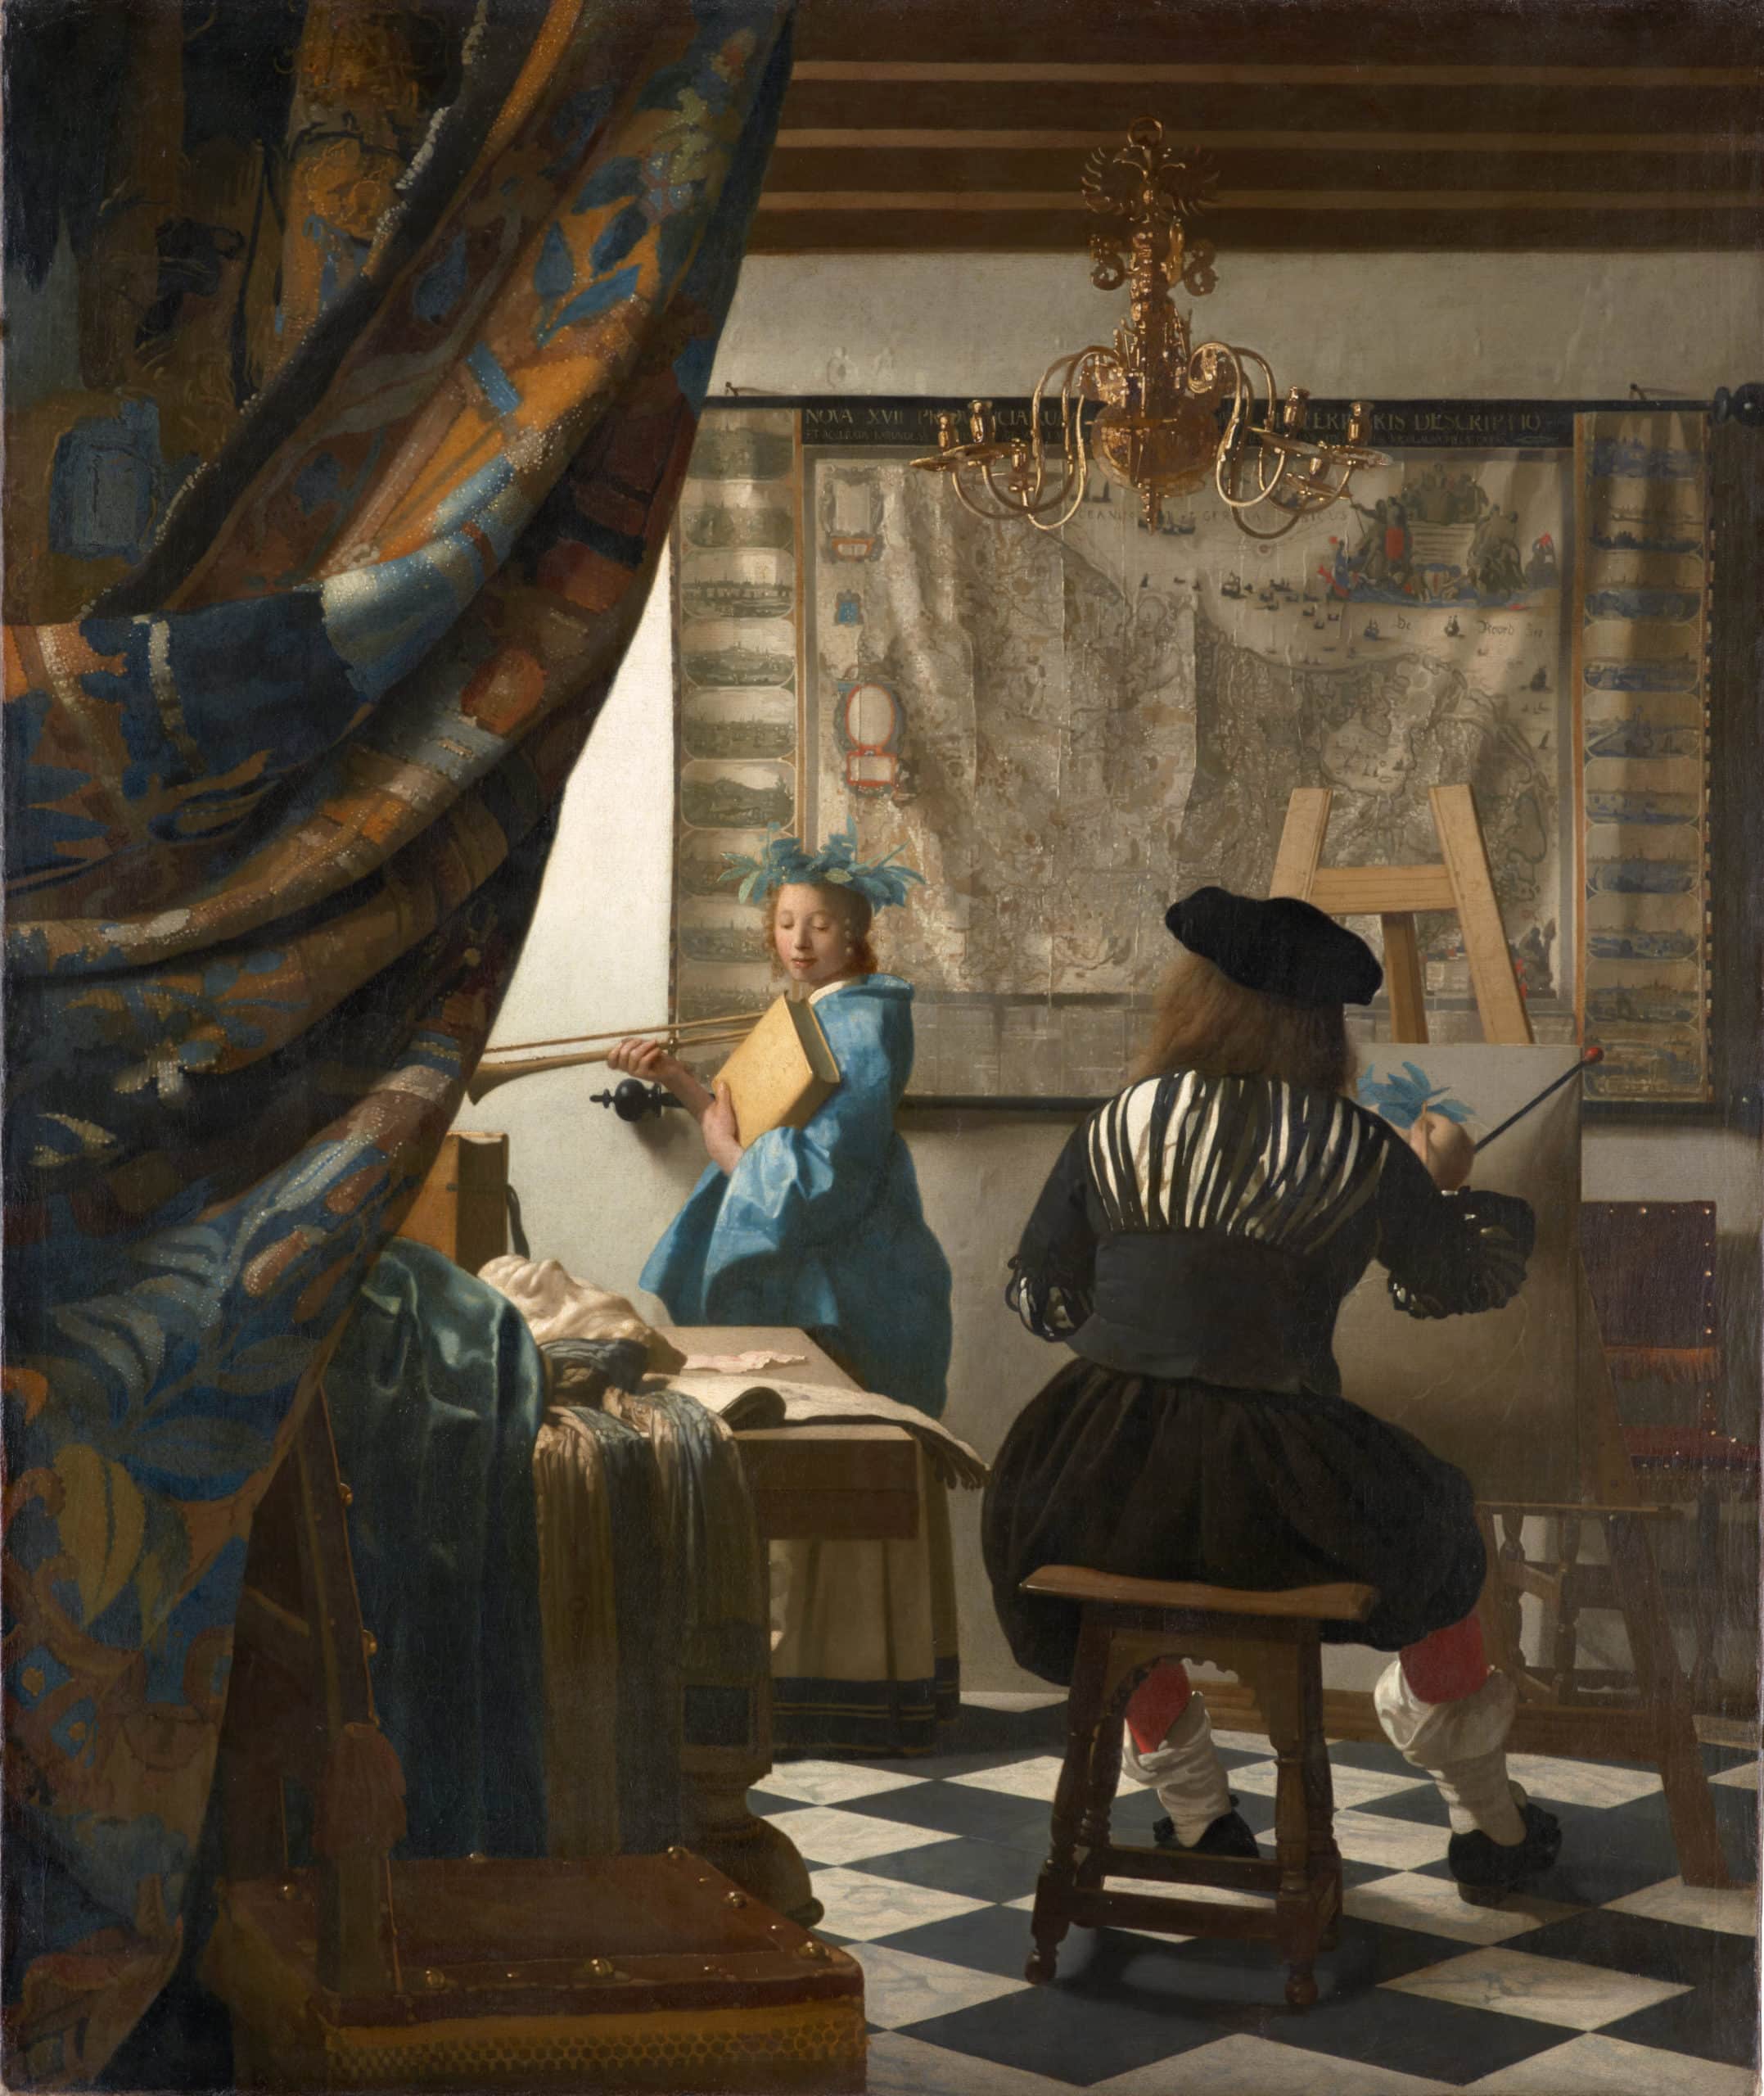 Die Malkunst ist ein Gemälde von Jan Vermeer, entstanden um 1664/1668 oder 1673, das durch seine Licht- und Schattenmalerei von höchster Qualität als eines der Hauptwerke des Künstlers gilt